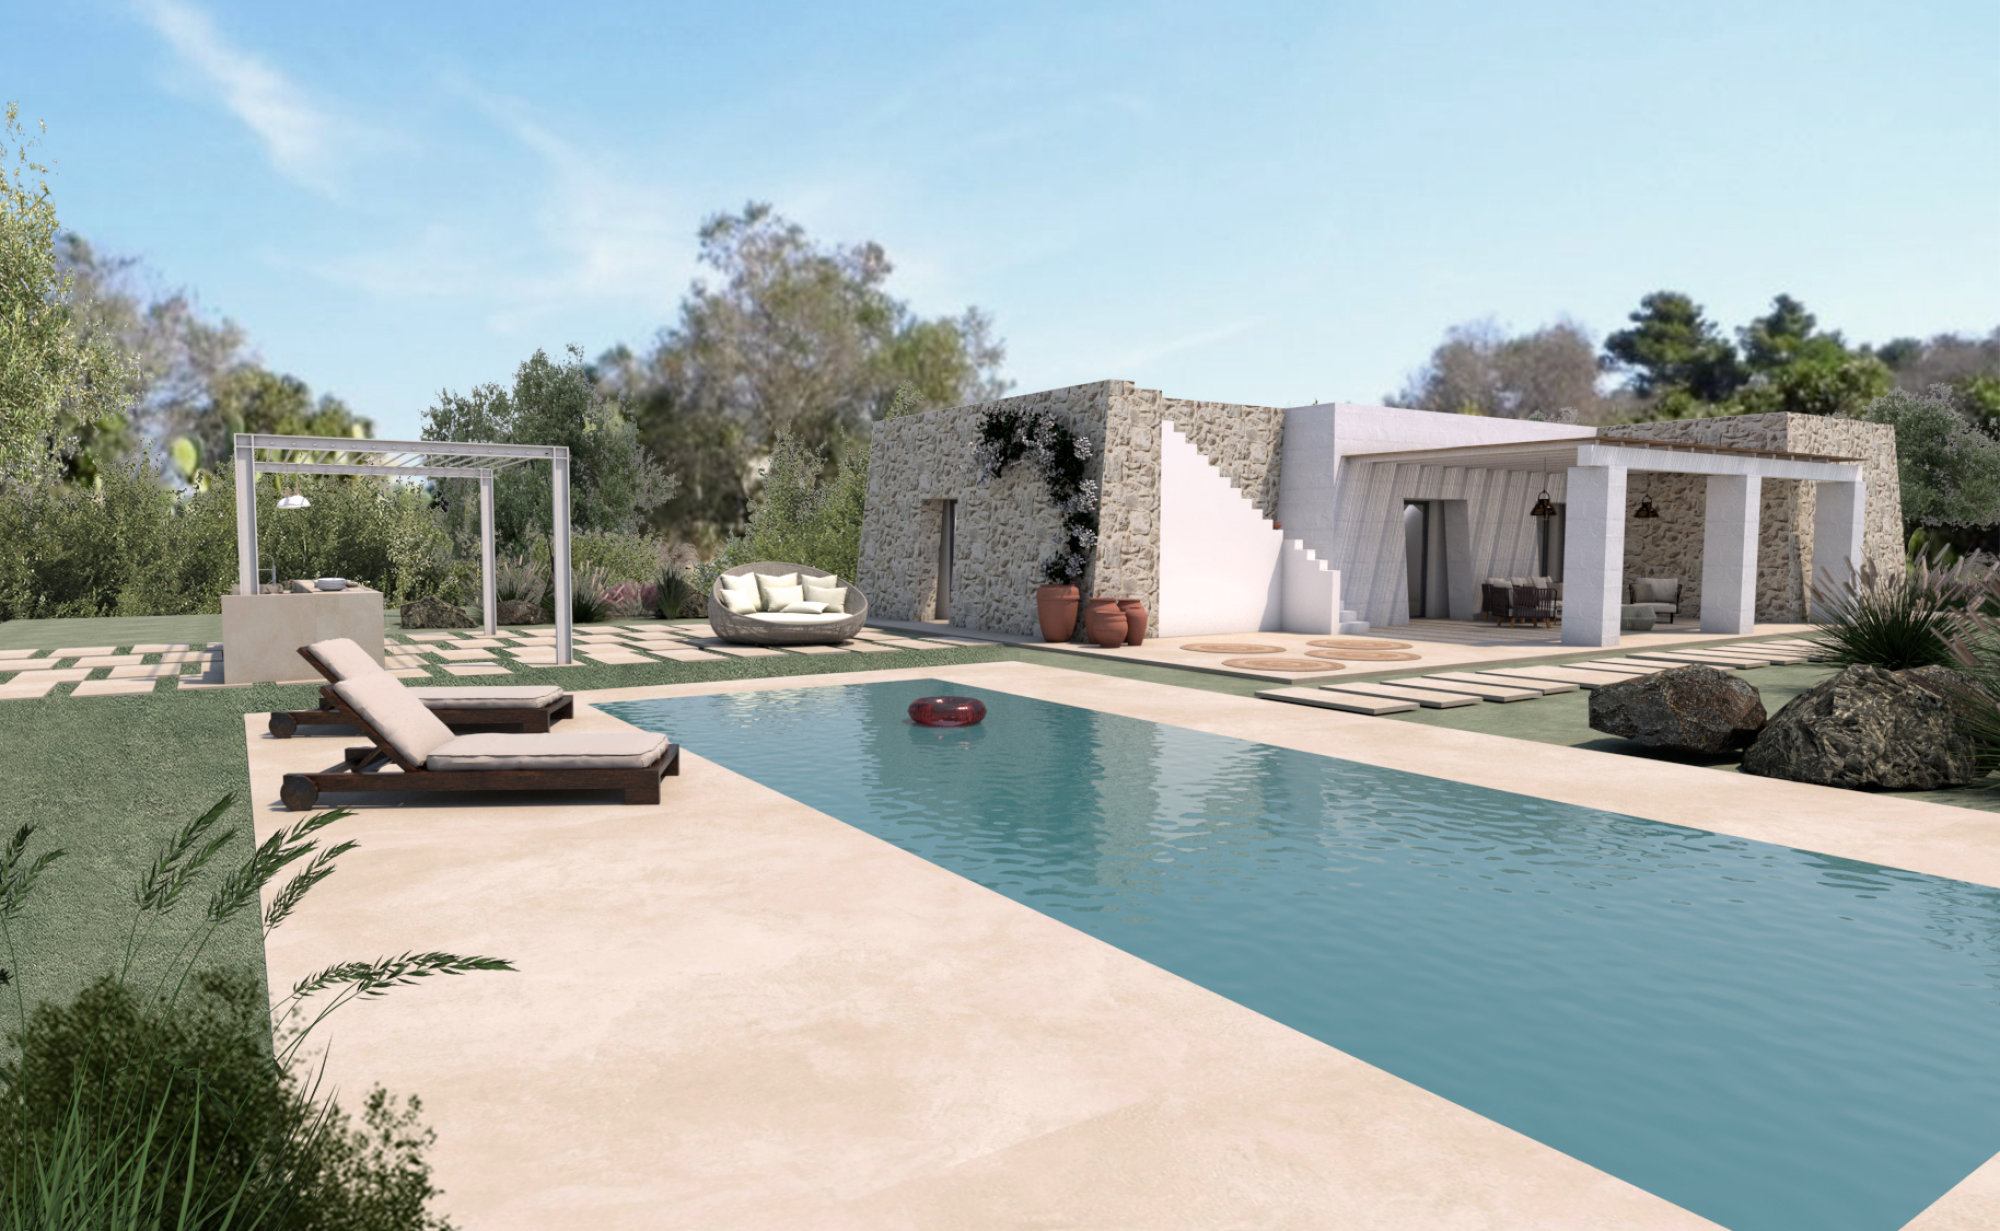 Villa in stile Salento e piscina da realizzare, con Lamione in pietra, a Pescoluse - Salve